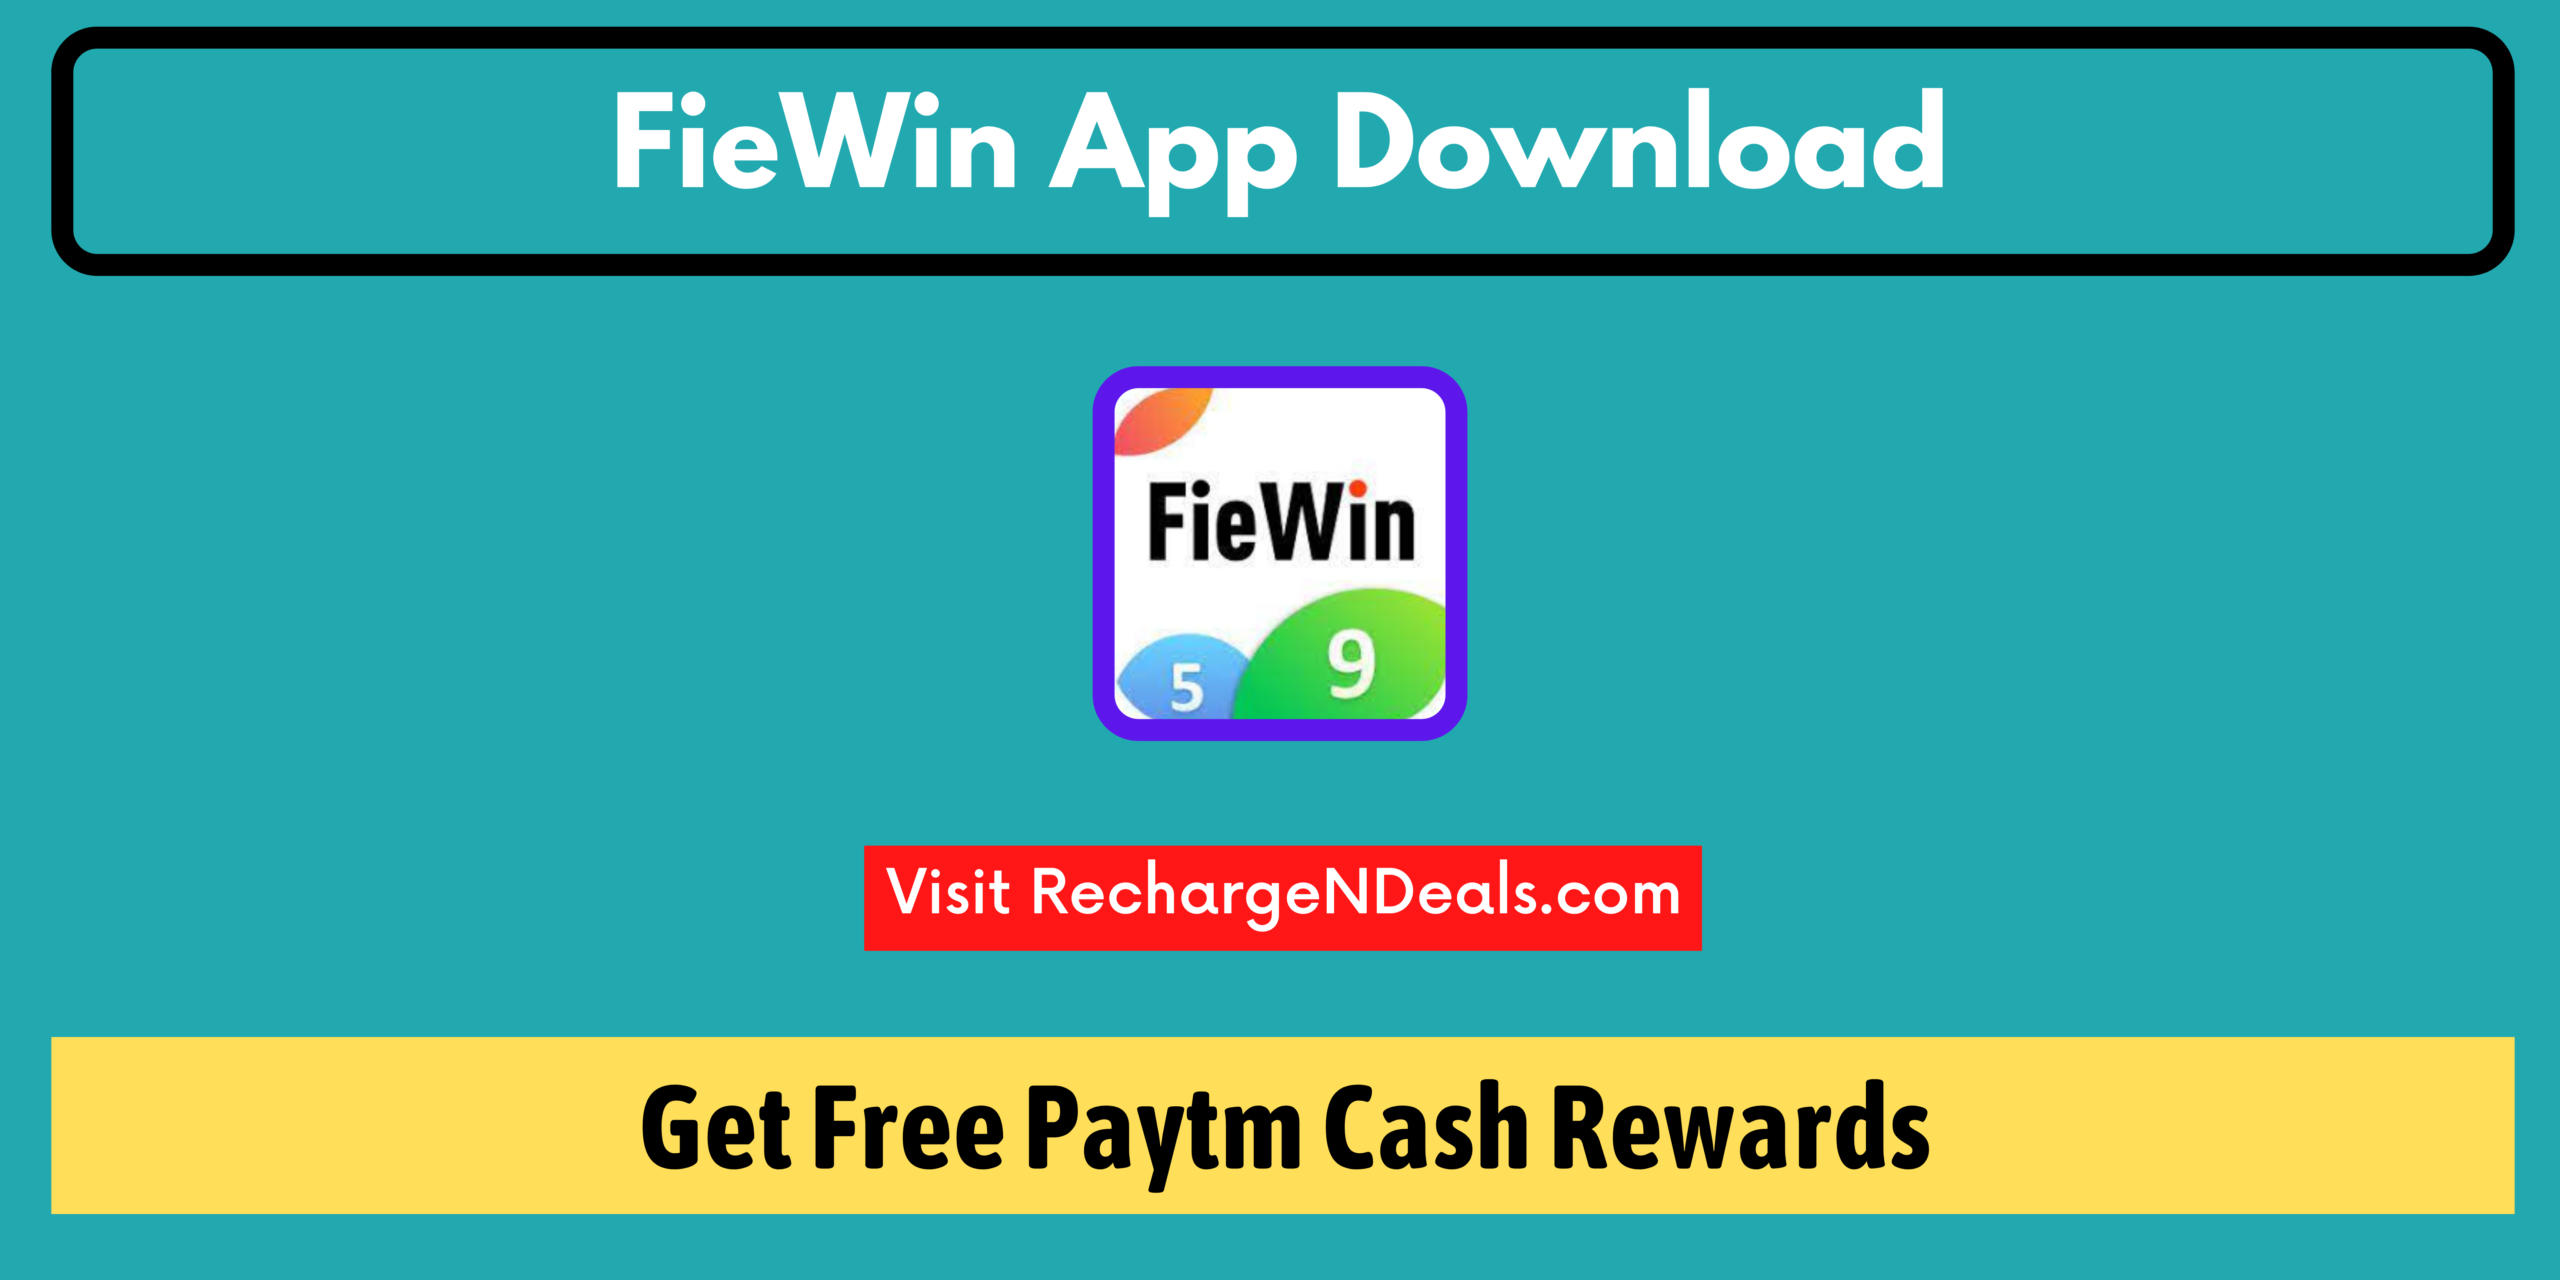 fiewin app download